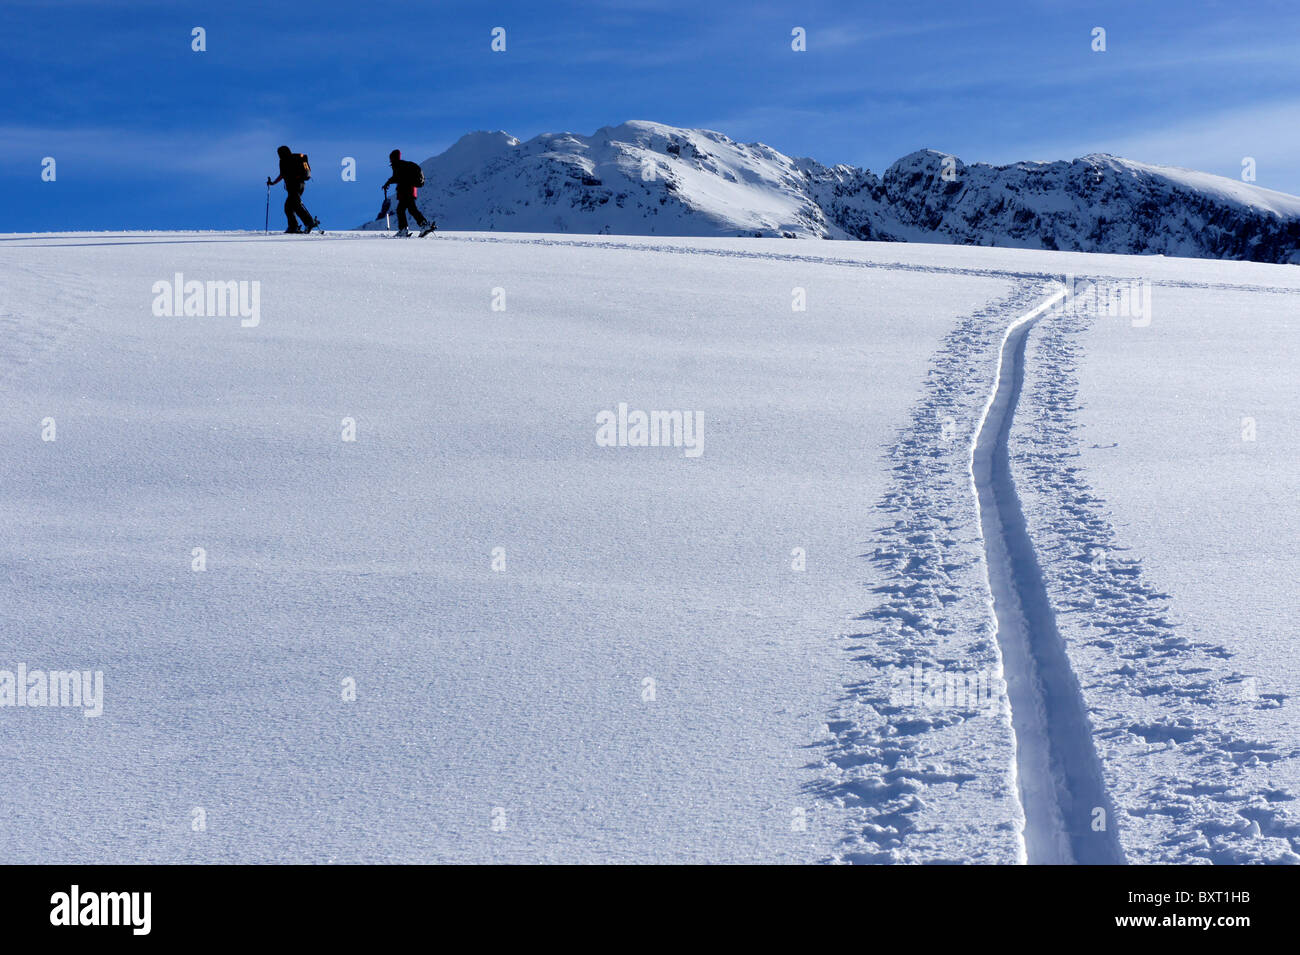 Skiers ascending mountain ridge in deep powder snow, Maennig-Stand, Diemtigal, Swiss Alps Stock Photo